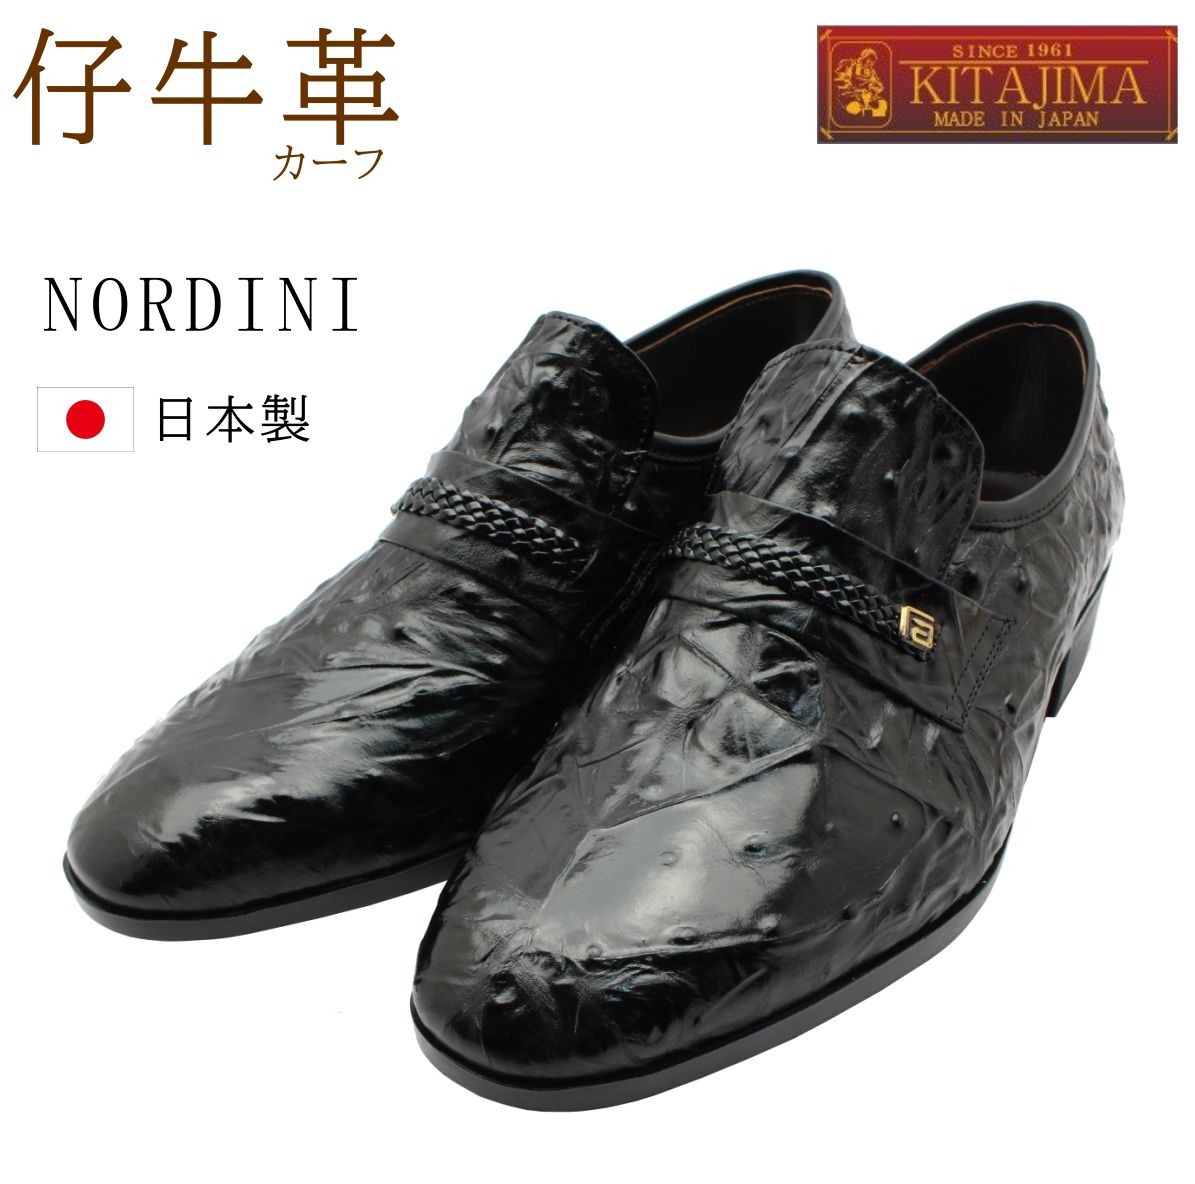 ノルディーニ NORDINI 日本製 紳士靴 メンズ ビジネスシューズ 177 4E オースト スリッポン カジュアル